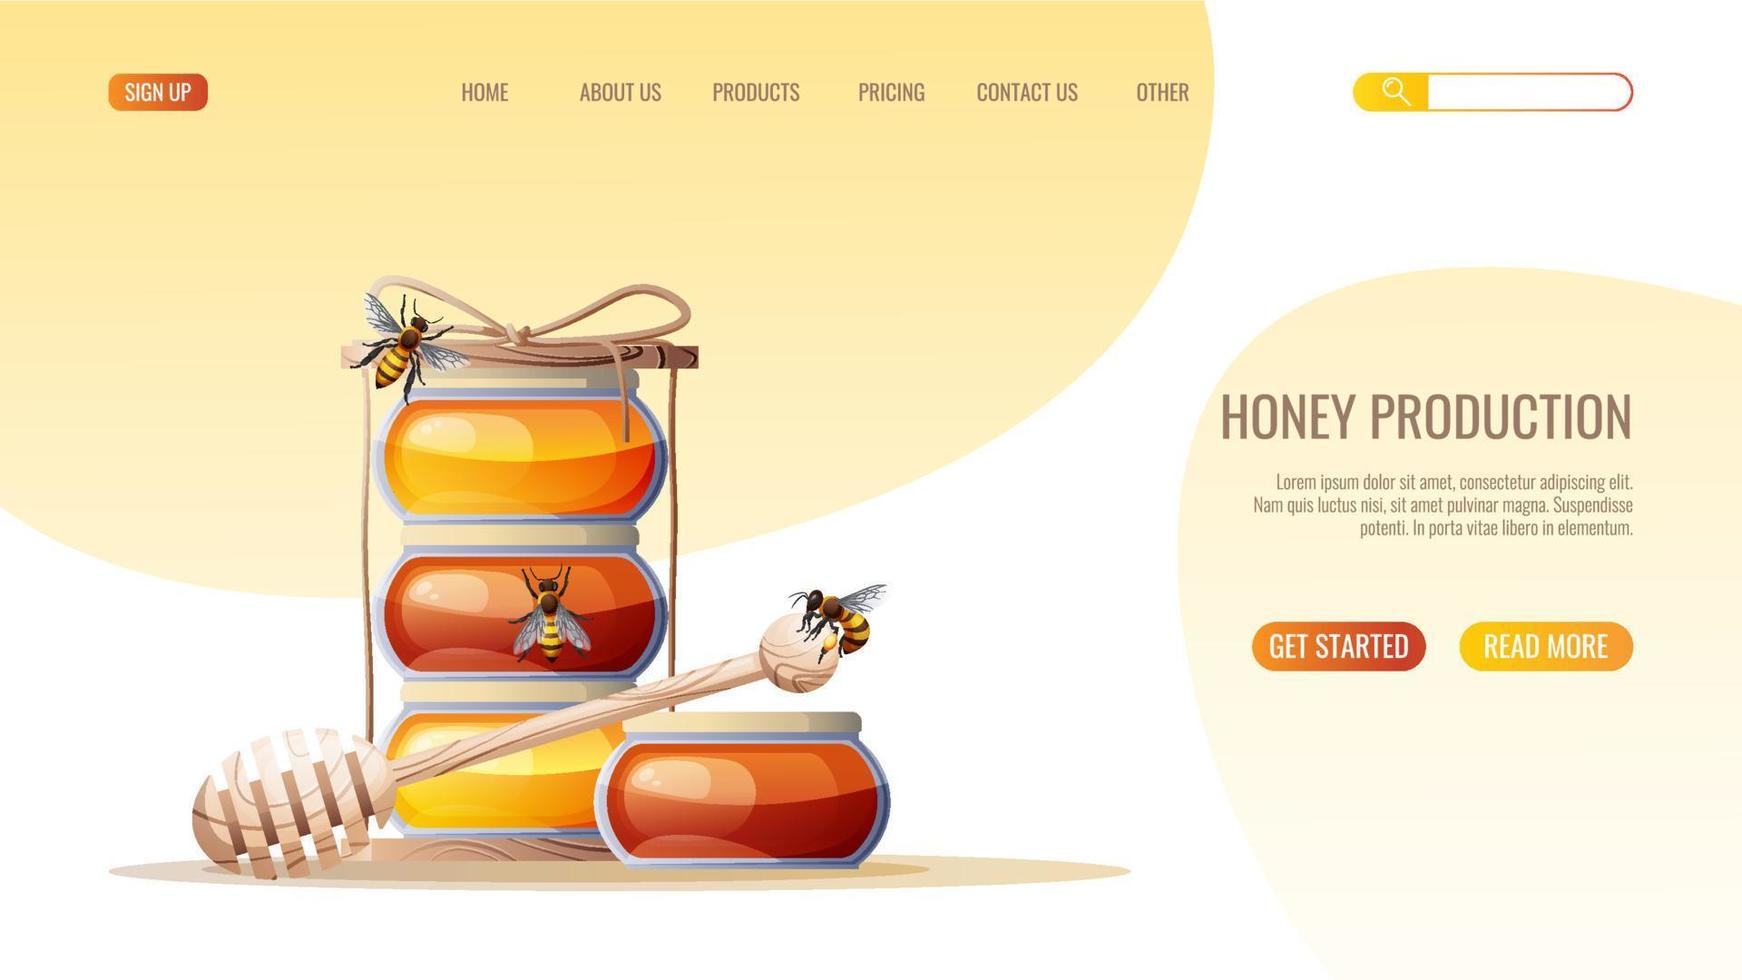 gesundes essen, naturprodukt. Honigglas, Löffel, Honig, Bienen. webseitendesignvorlage für geschäft, honigwebsite. vektorillustration für banner, anzeige, webseite, cover vektor